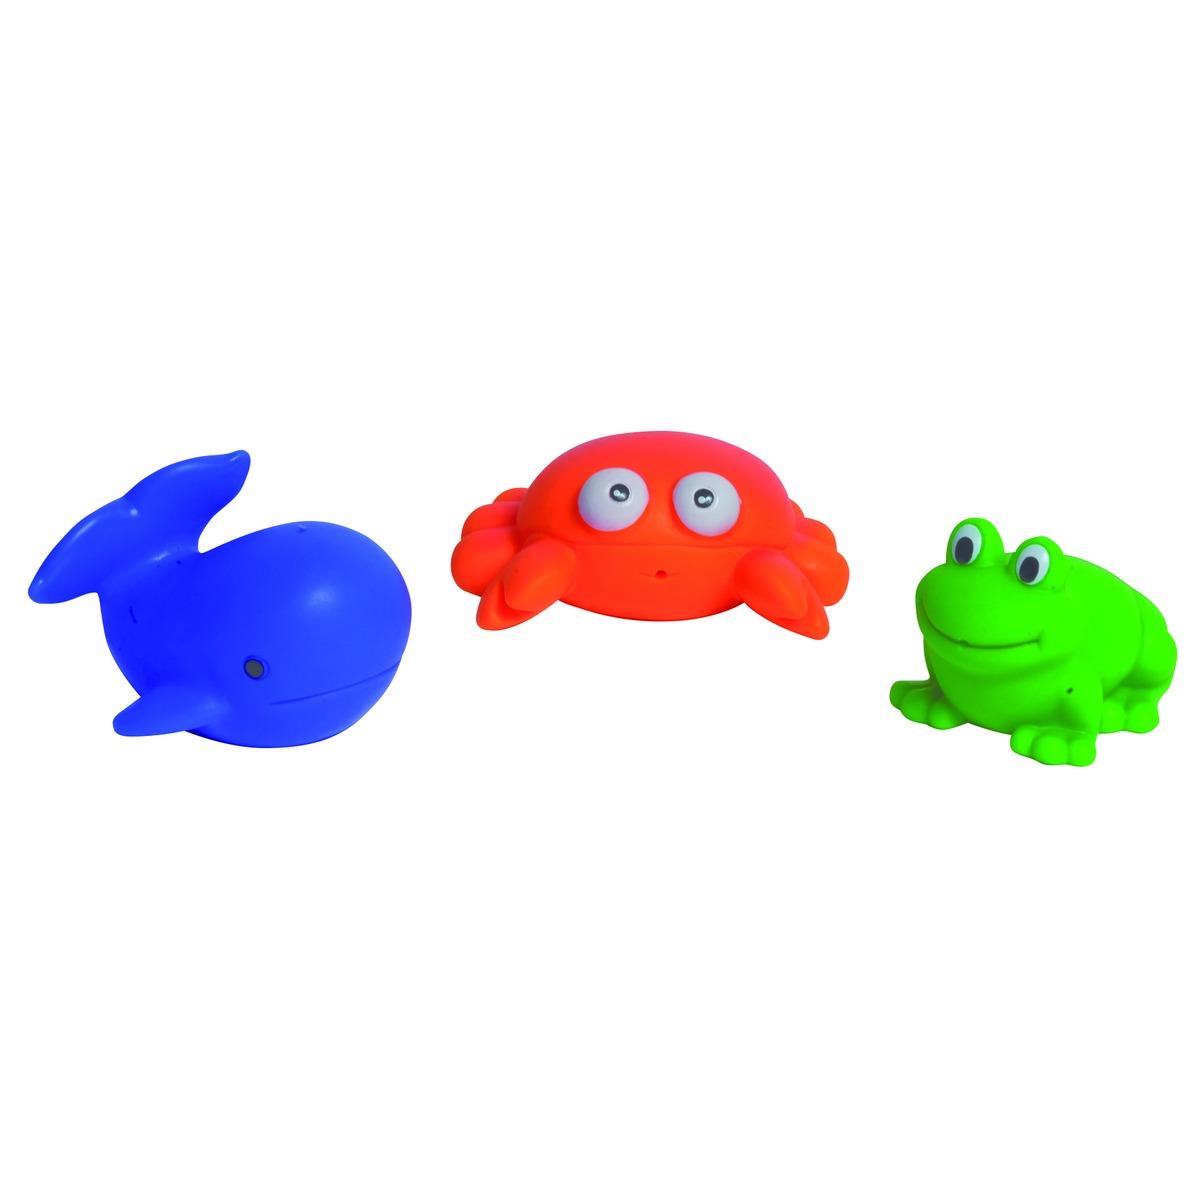 Ensemble de 3 animaux de bain lanceurs d'eau - 6 x 5,5 x 4,5 cm - 8,5 x 6 x 3,5 cm - 7 x 6,5 x 5 cm - Multicolore